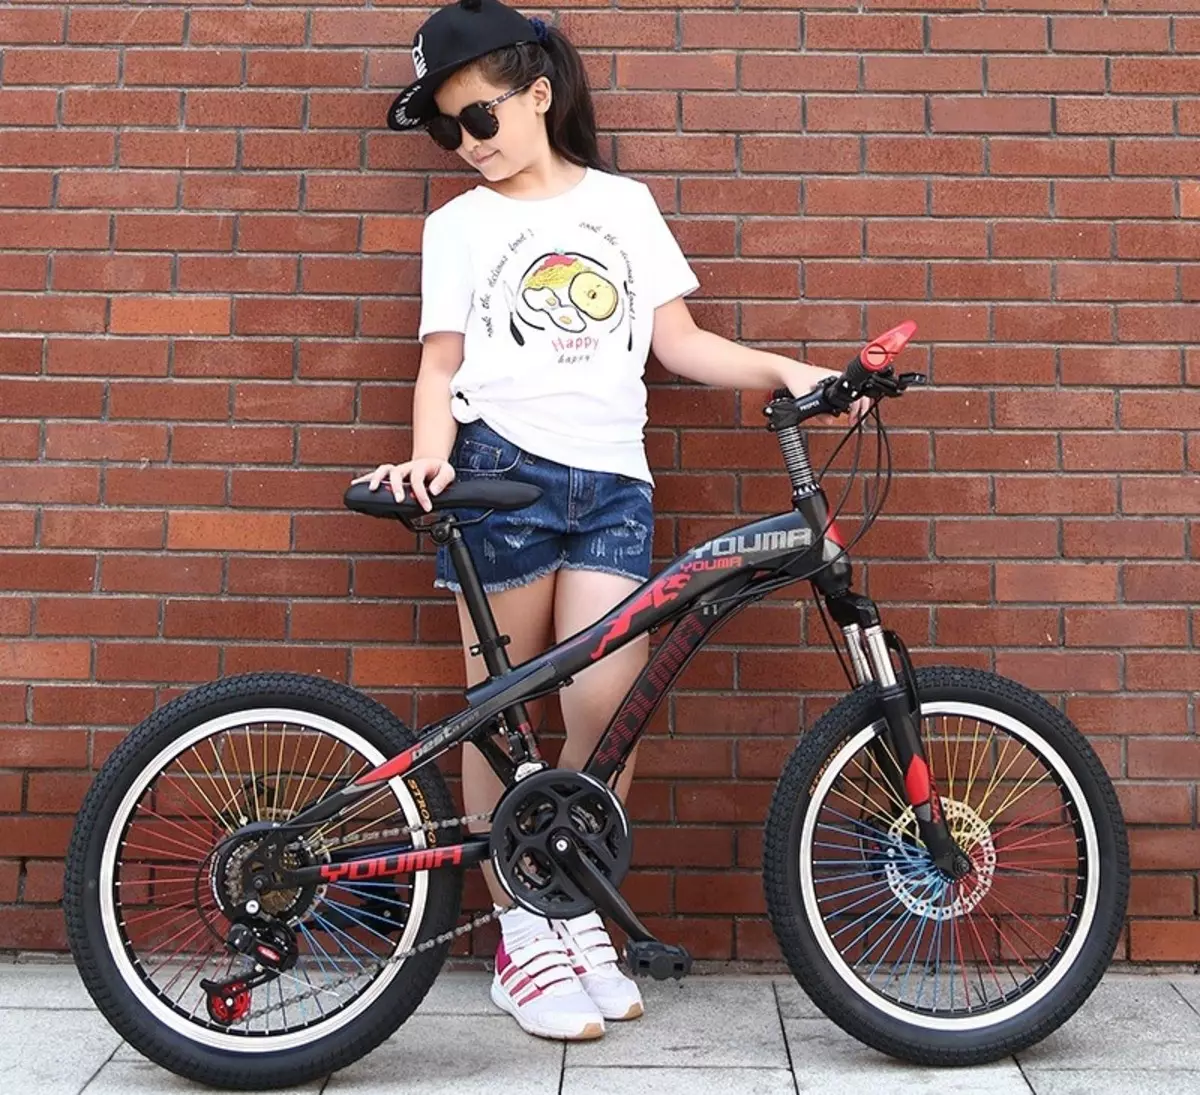 الدراجات الهوائية للأطفال للطفل هي 10 سنة: كيفية اختيار الدراجة لصبي وفتاة في سن المراهقة؟ كيفية اختيار قطر العجلة؟ نماذج التصنيف 8589_9